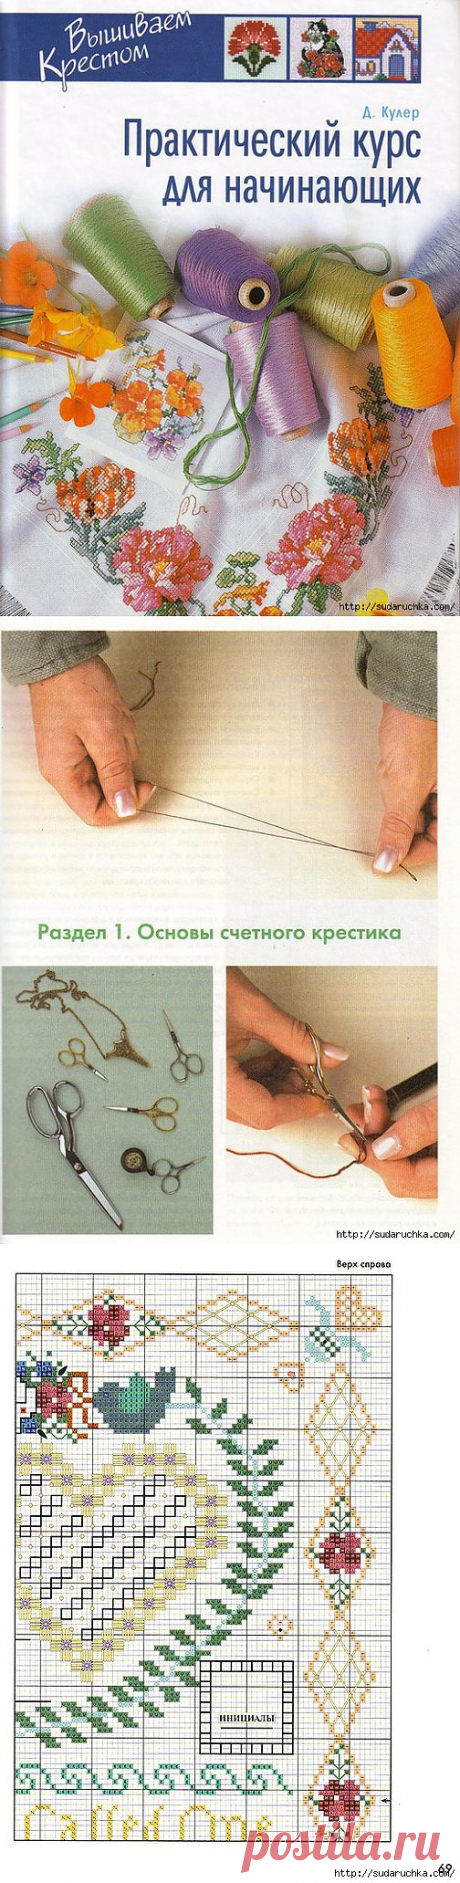 &quot;Практический курс по вышивке для начинающих&quot; - книга по рукоделию.